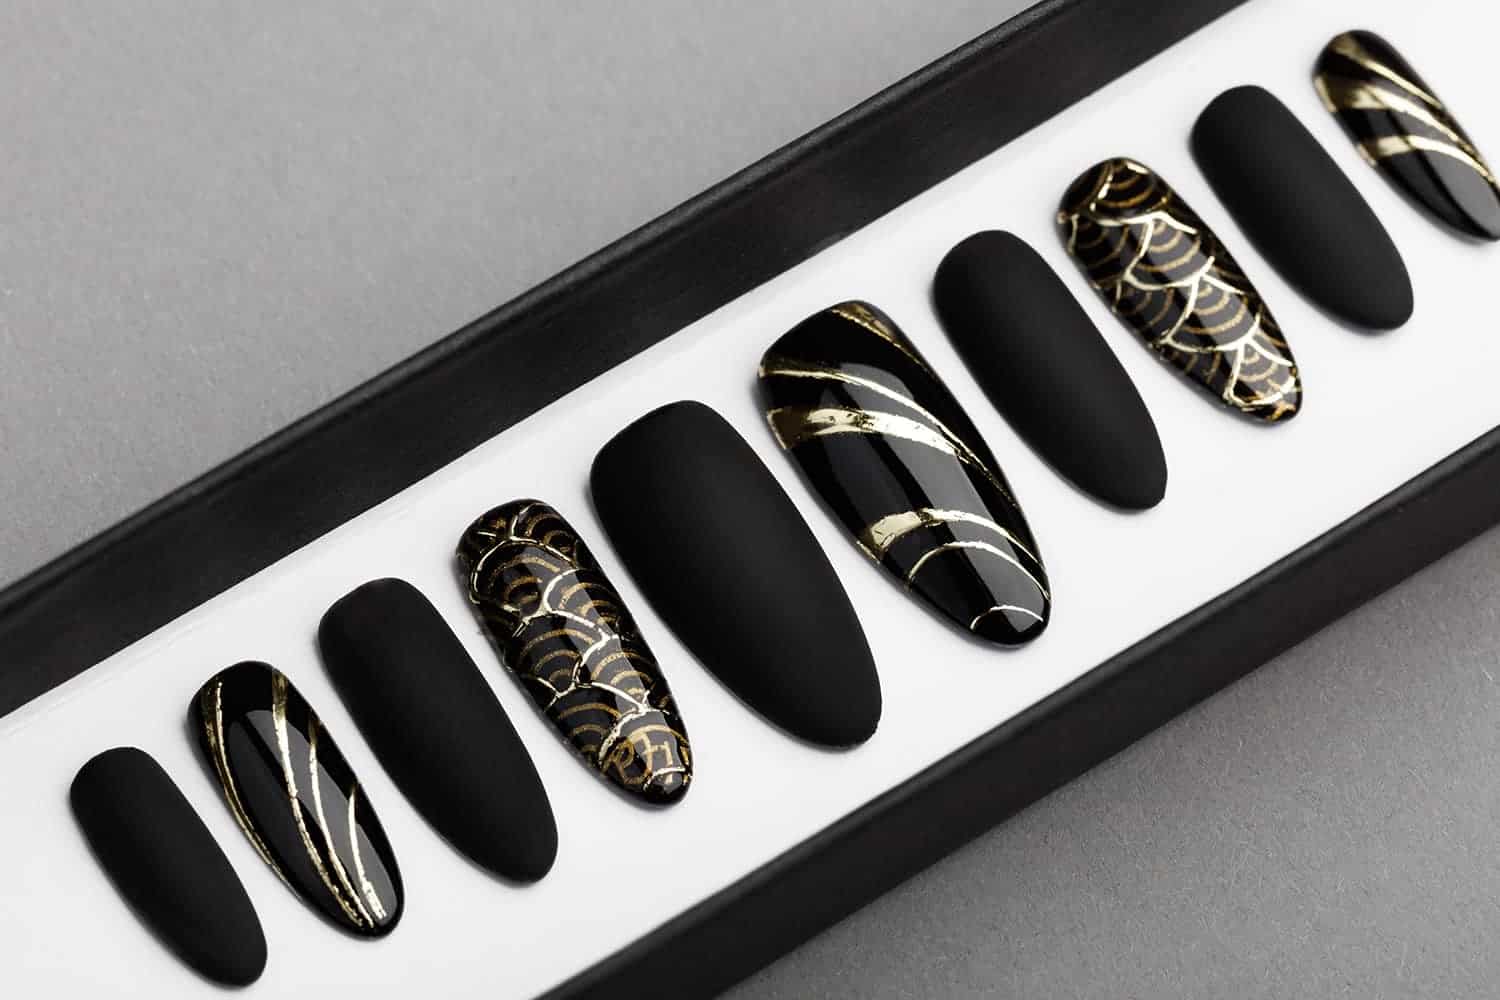 Black & Gold Abstraction Press on Nails | Black Pattern | Hand painted Nail Art | Fake Nails | False Nails